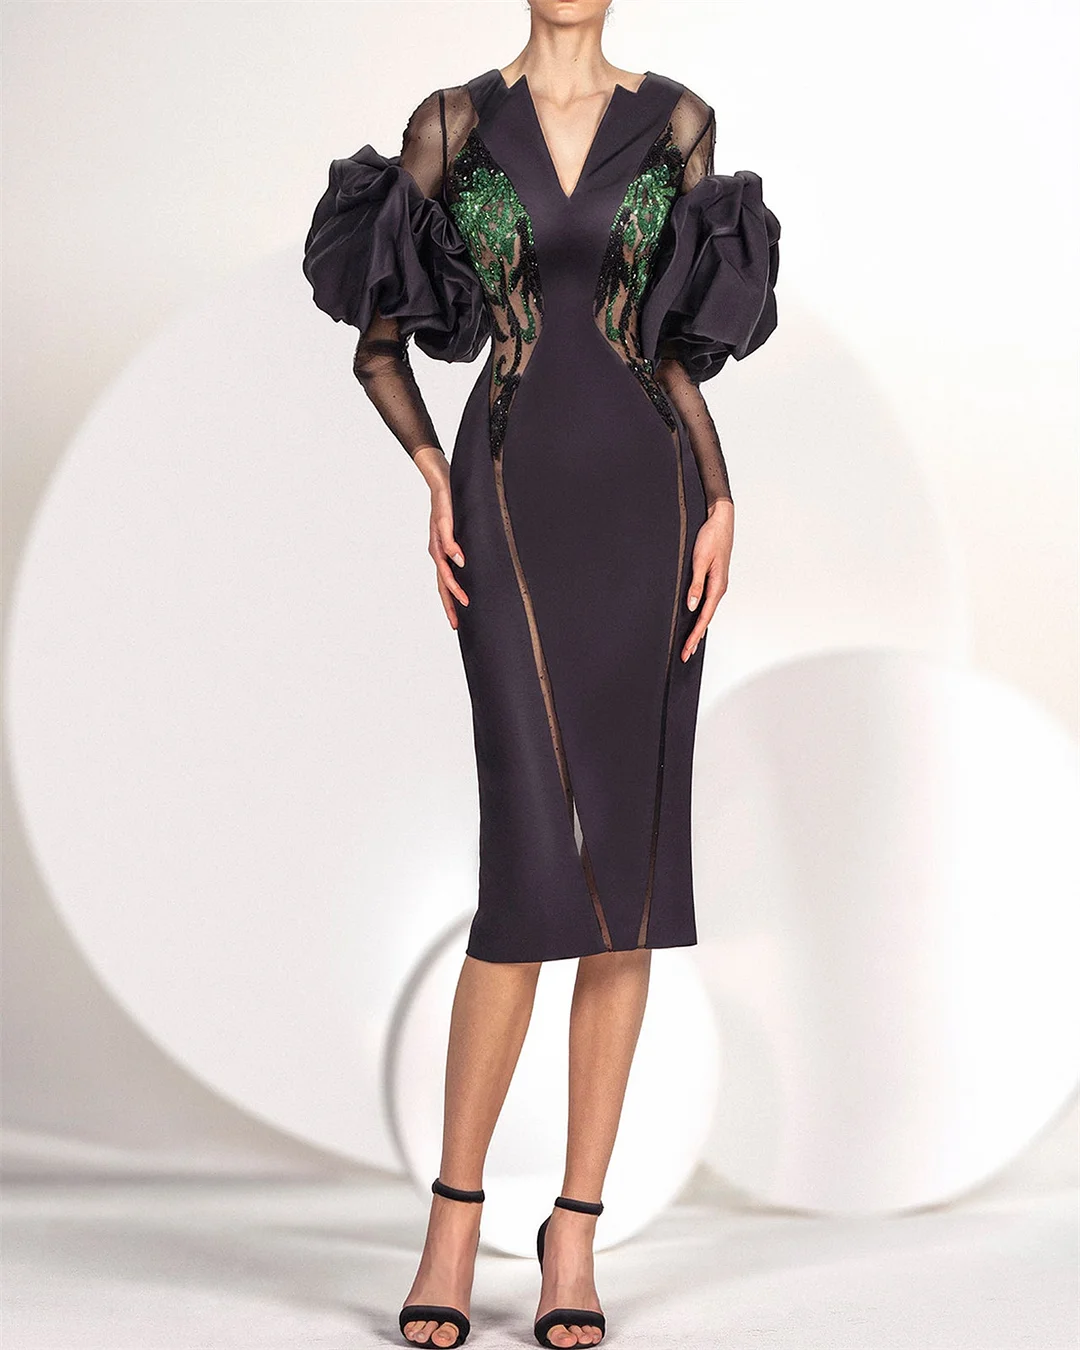 Women's V-neck Black Sequin Dress